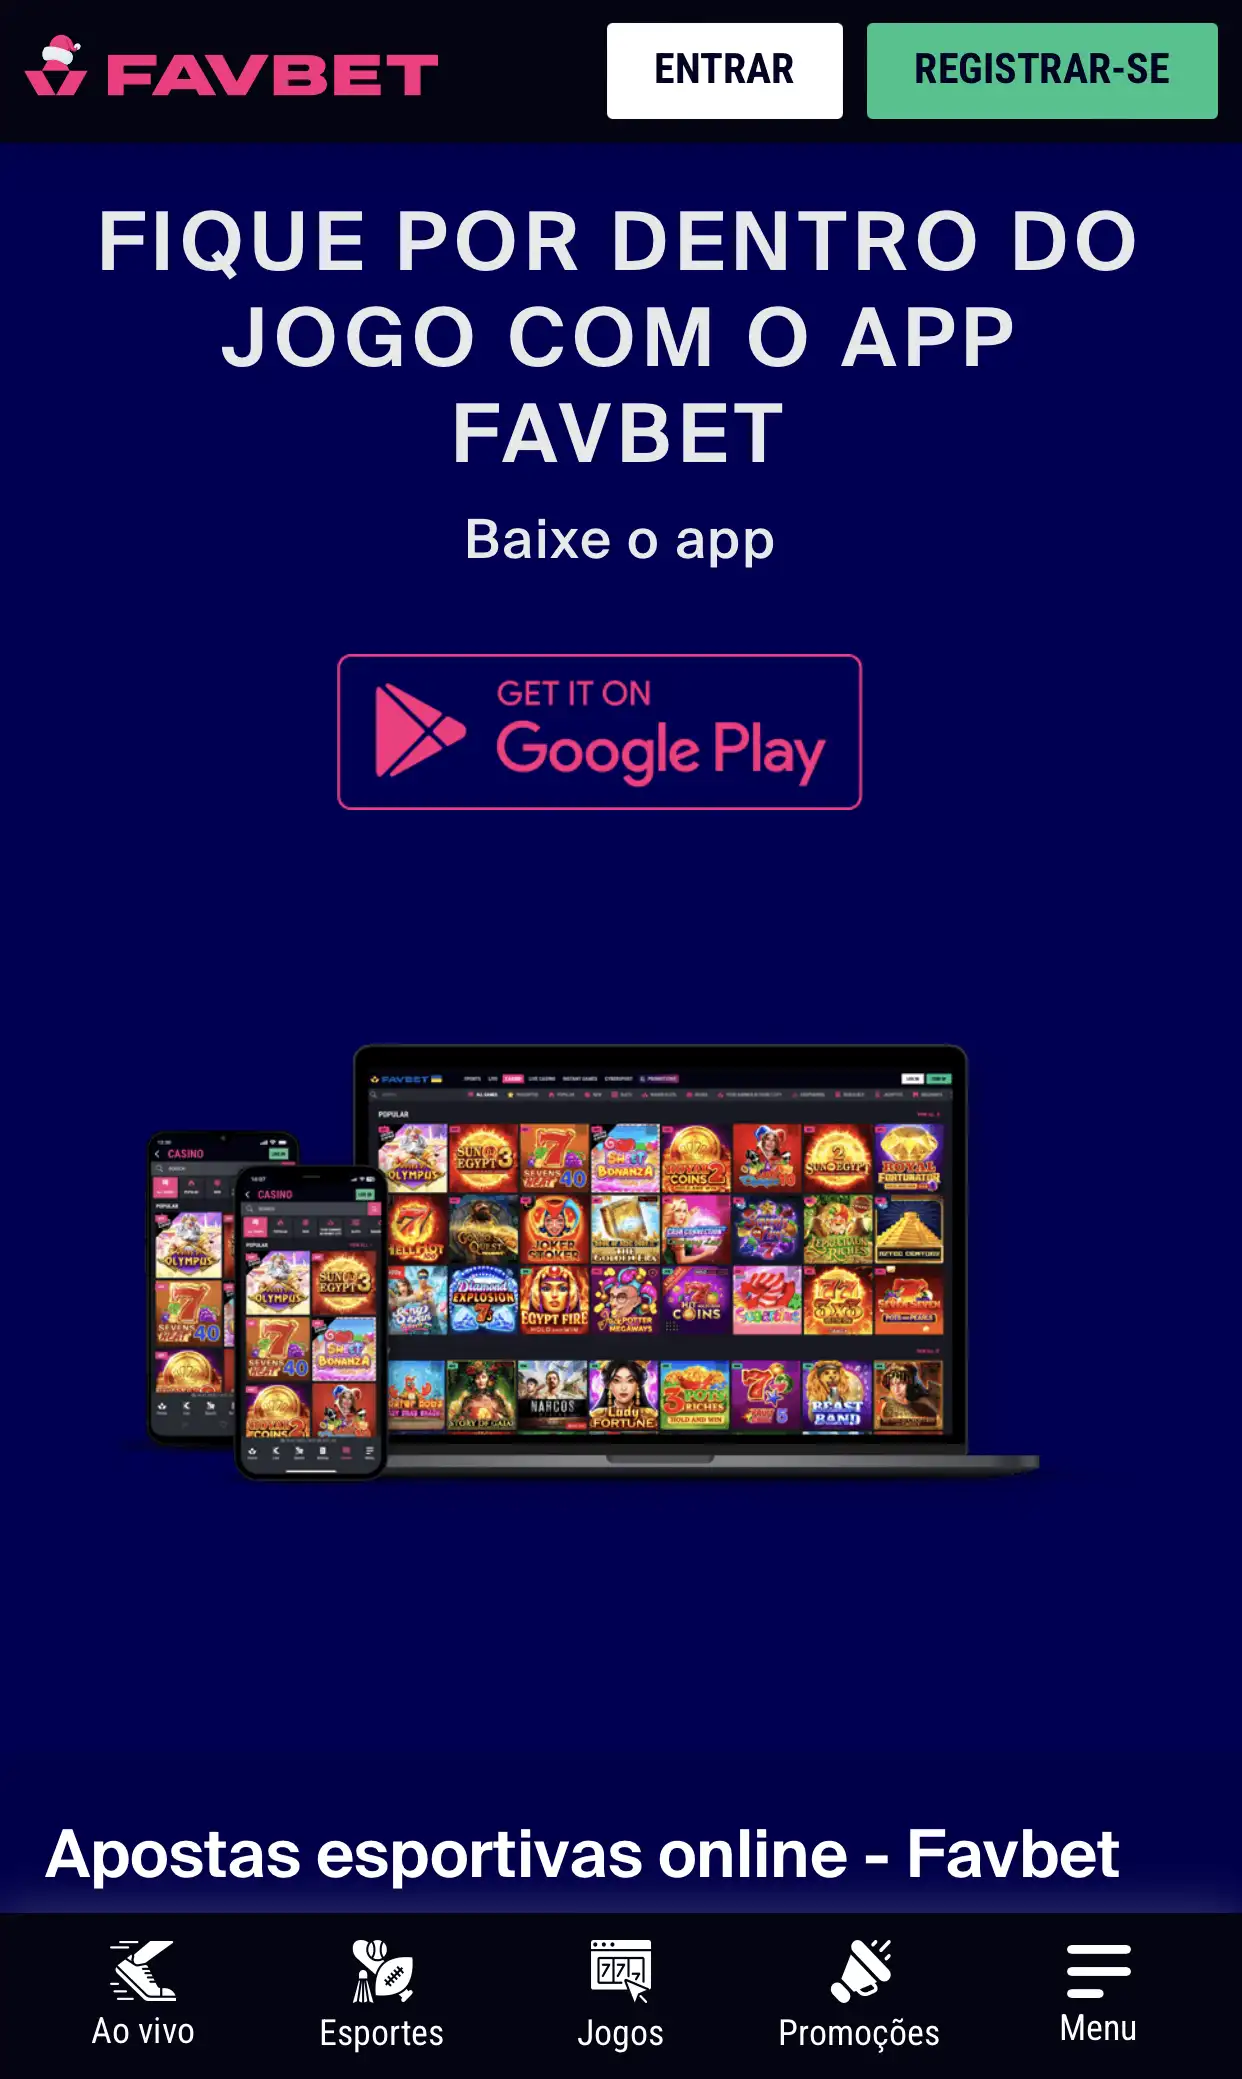 Você precisa abrir a versão móvel do site da Favbet.